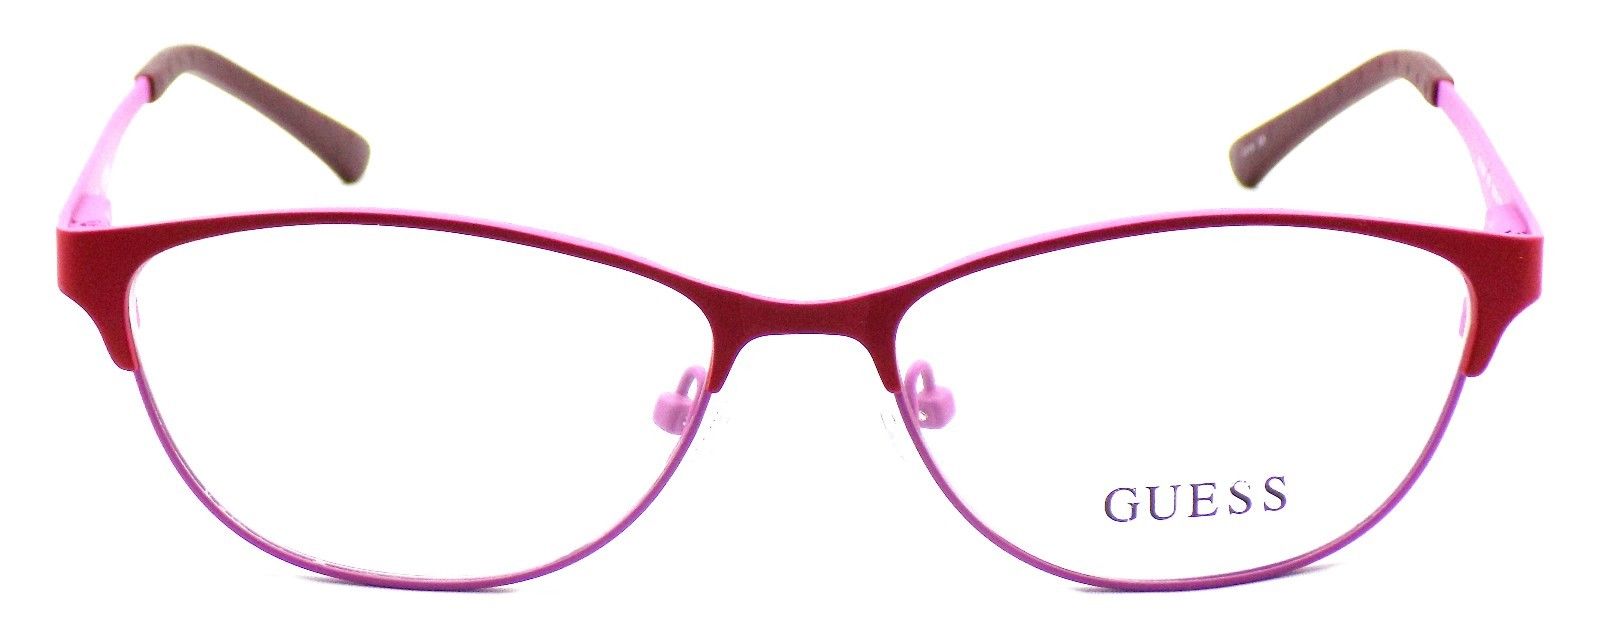 2-GUESS GU2504 073 Women's Eyeglasses Frames 53-15-135 Matte Red / Pink + CASE-664689697625-IKSpecs